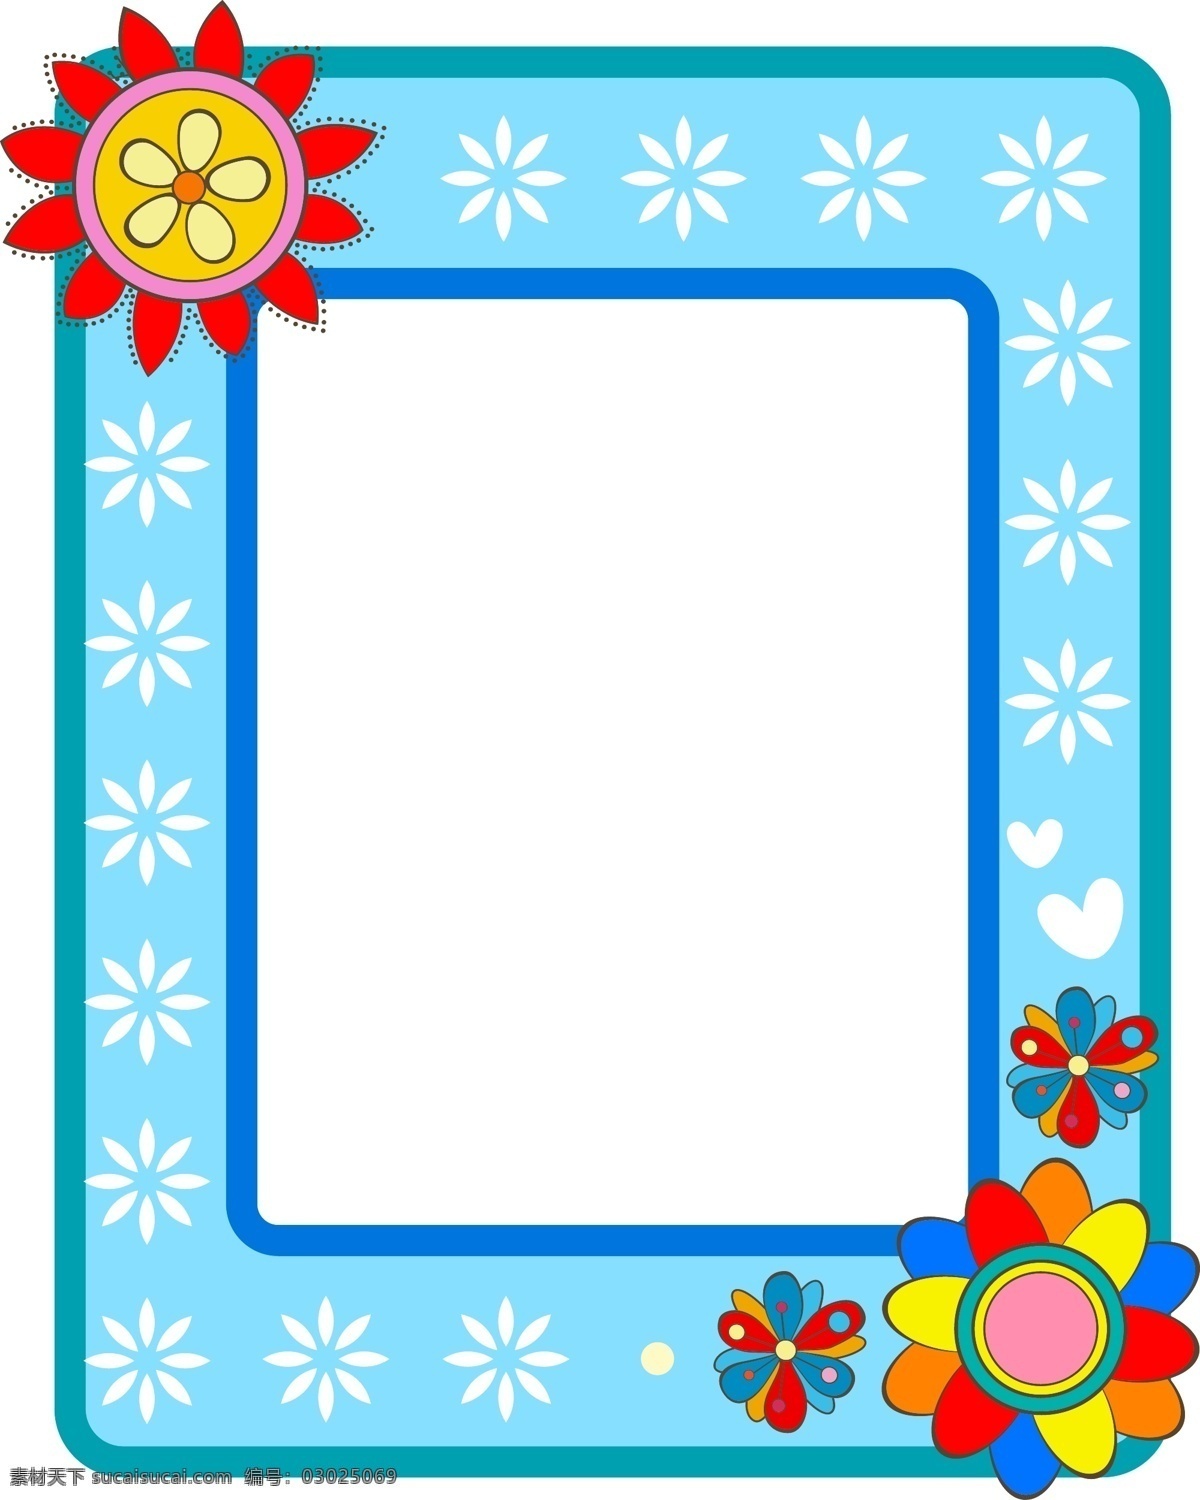 清新 白色 花朵 蓝色 边框 元素 手绘 蓝色边框 彩色装饰画 ai元素 免扣元素 清新白色花朵